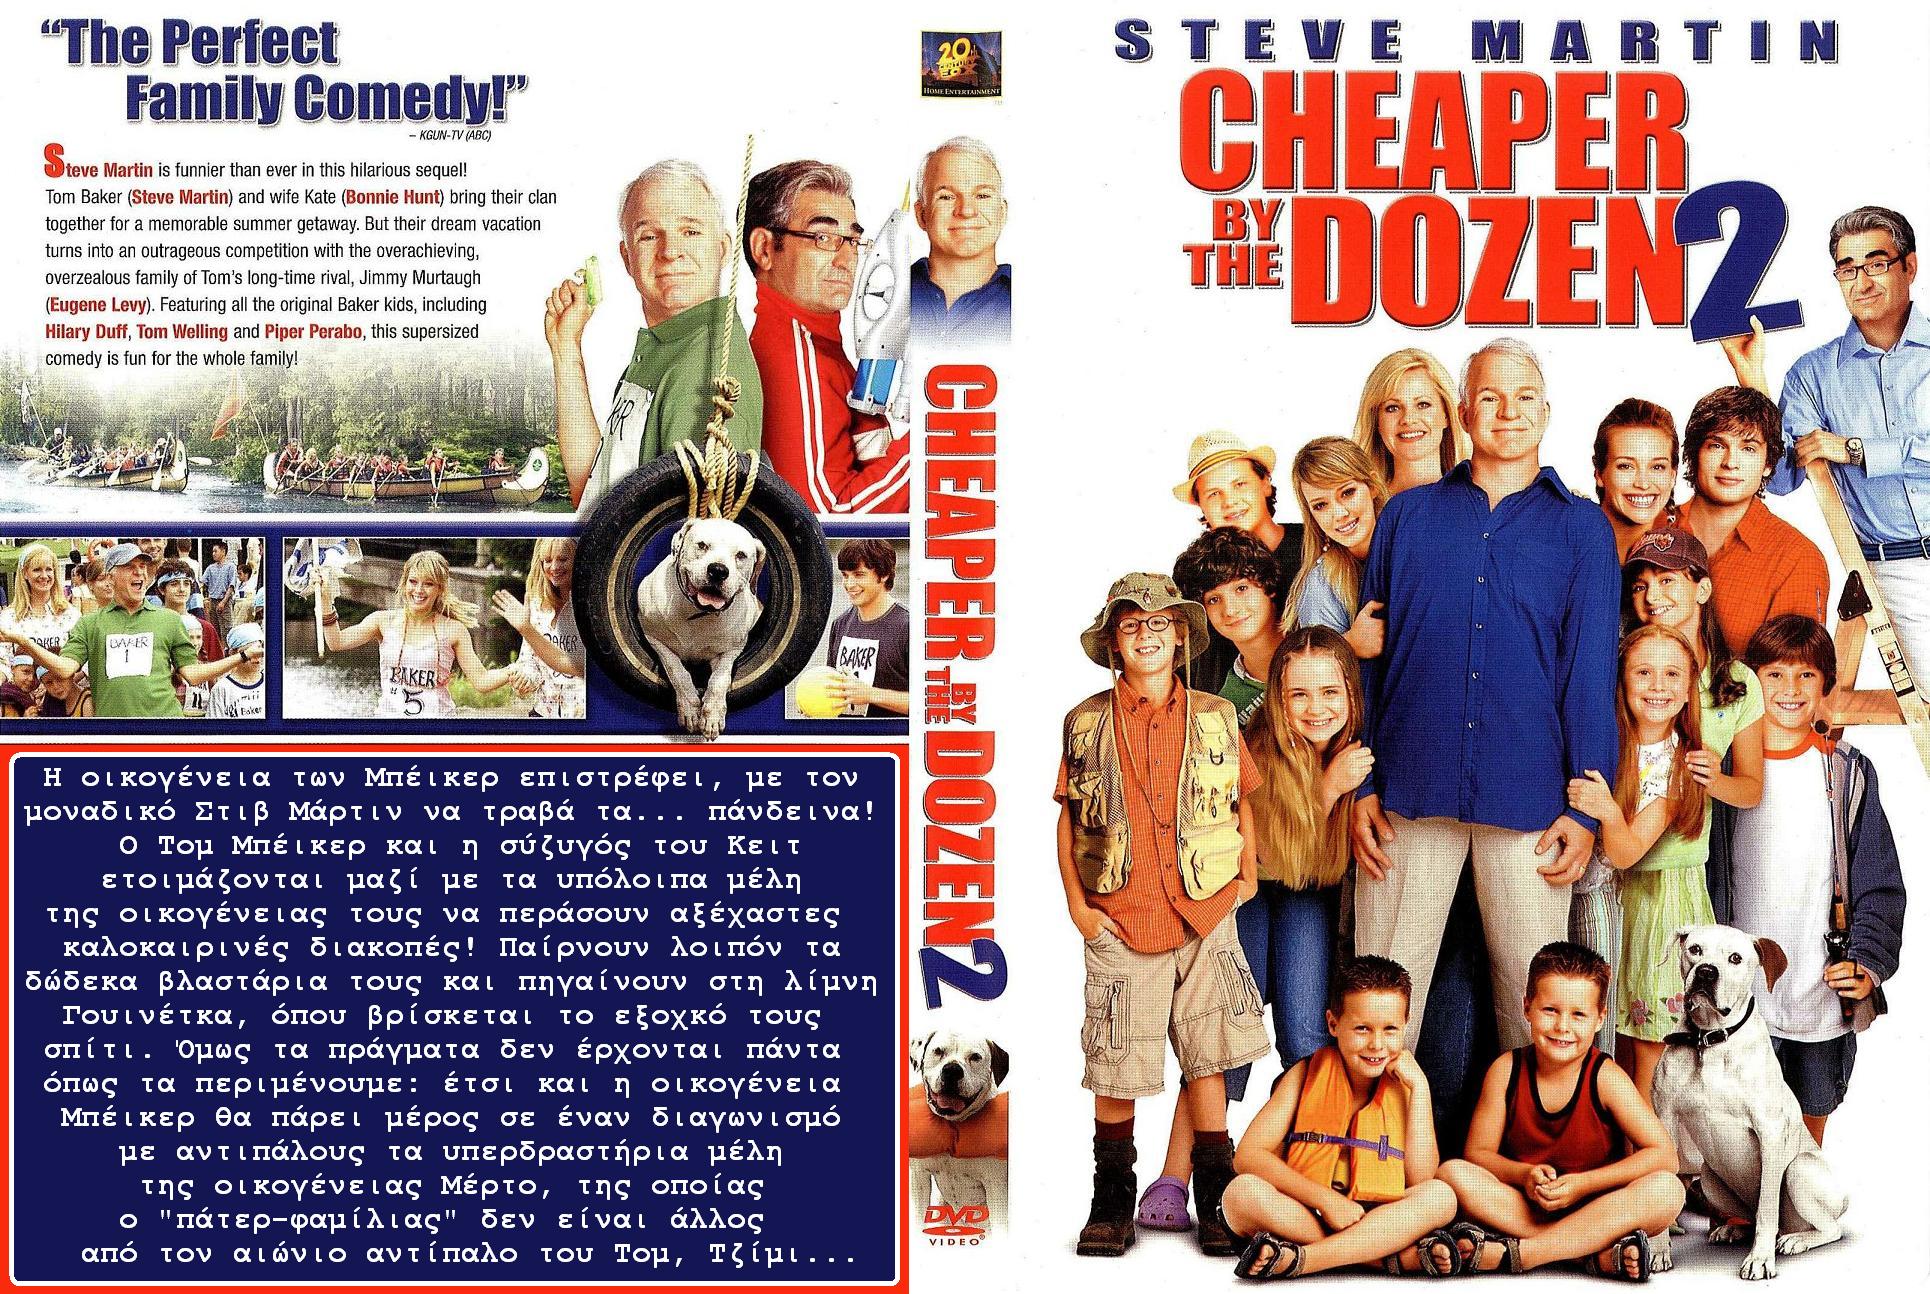 Cheaper By The Dozen 2 wallpapers, Movie, HQ Cheaper By The Dozen.